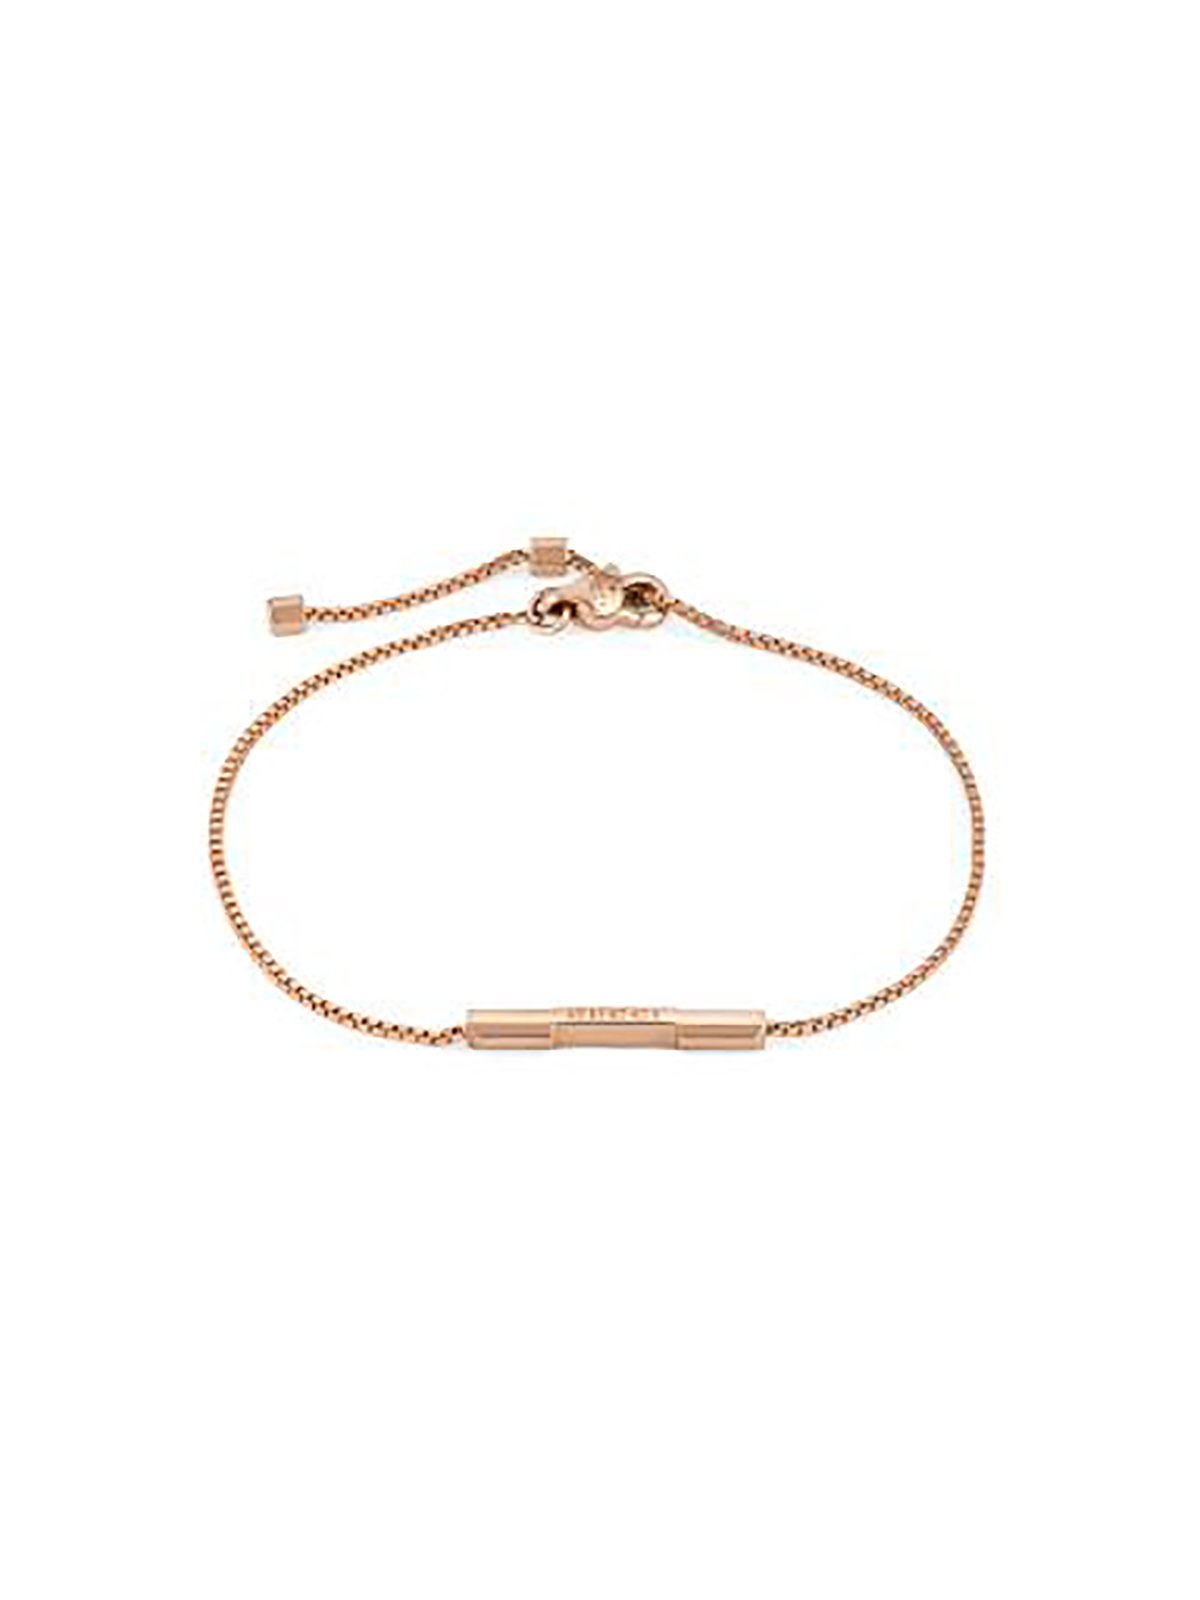 Gucci Link to Love 18ct Rose Gold Bracelet 16cm